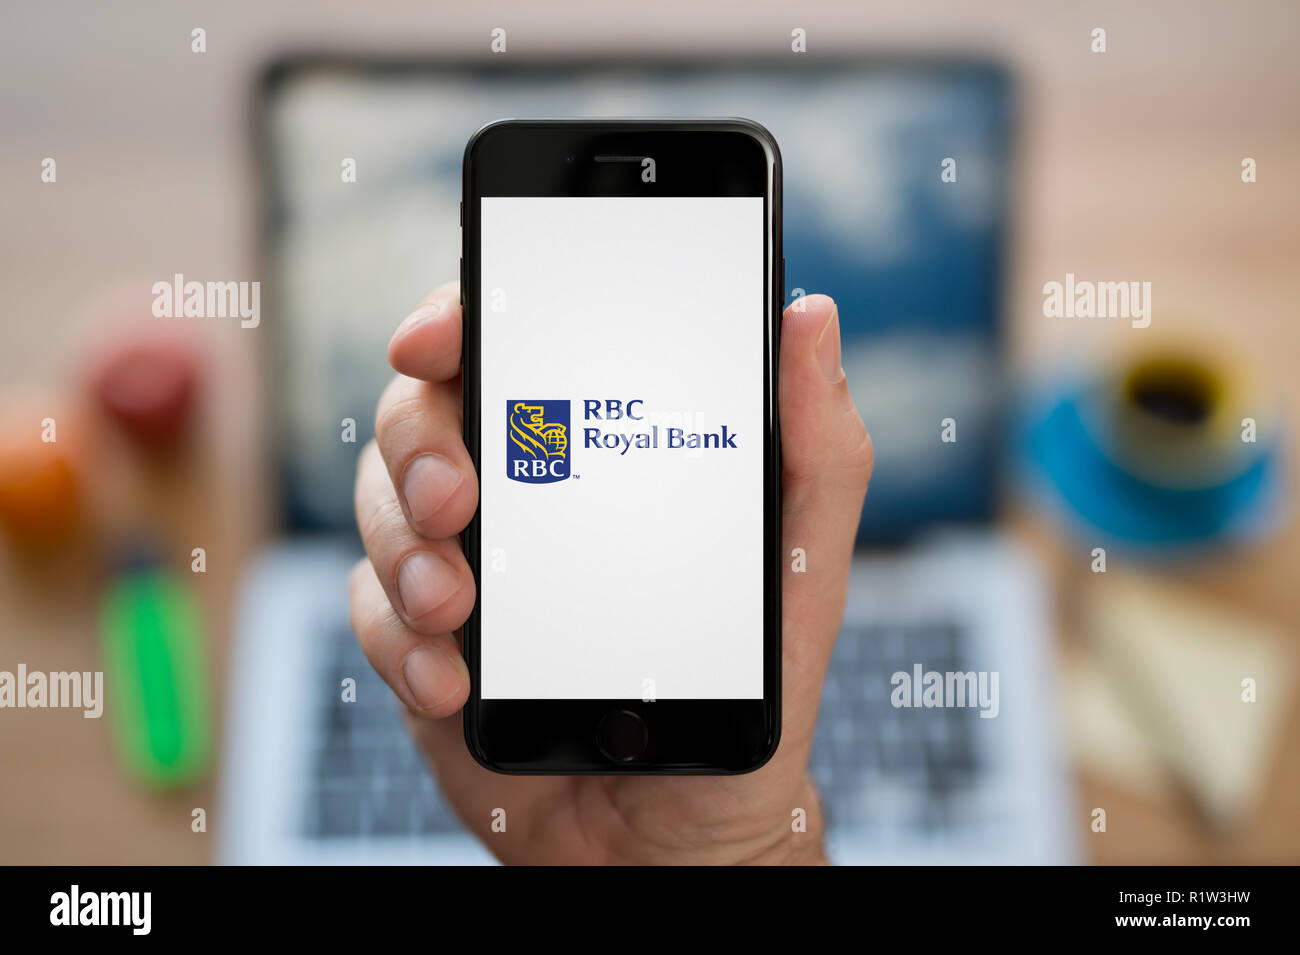 Un homme se penche sur son iPhone qui affiche le logo de RBC Banque Royale, en restant assis devant son ordinateur 24 (usage éditorial uniquement). Banque D'Images